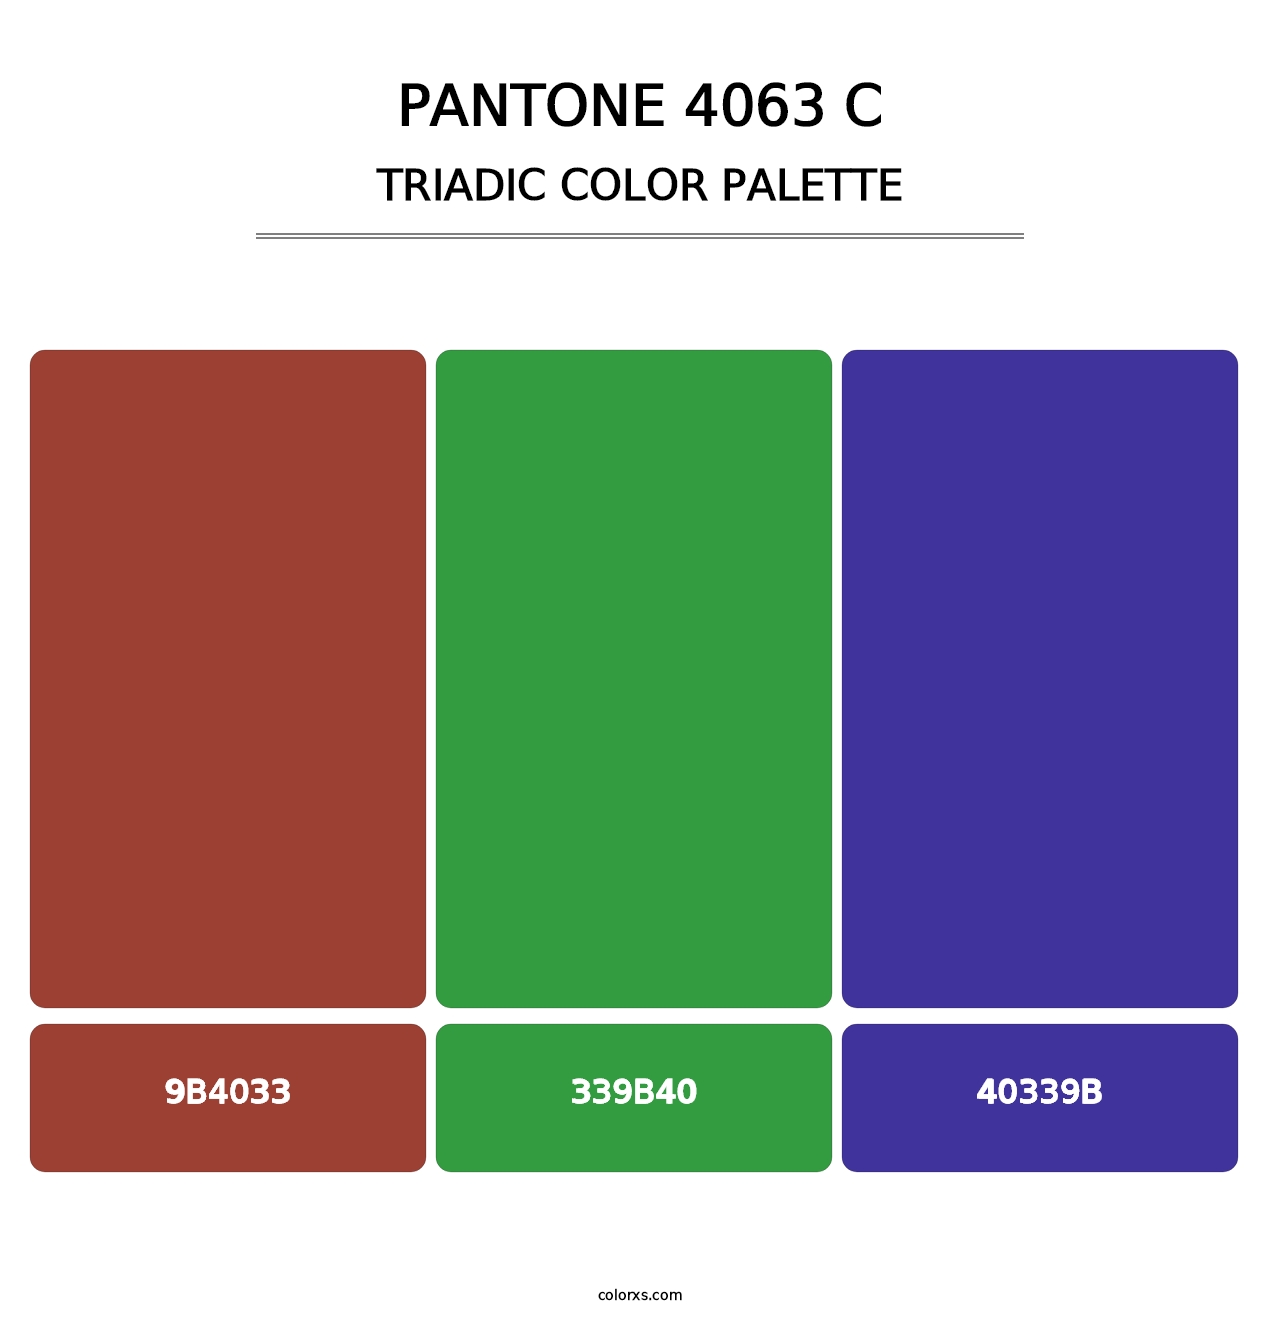 PANTONE 4063 C - Triadic Color Palette